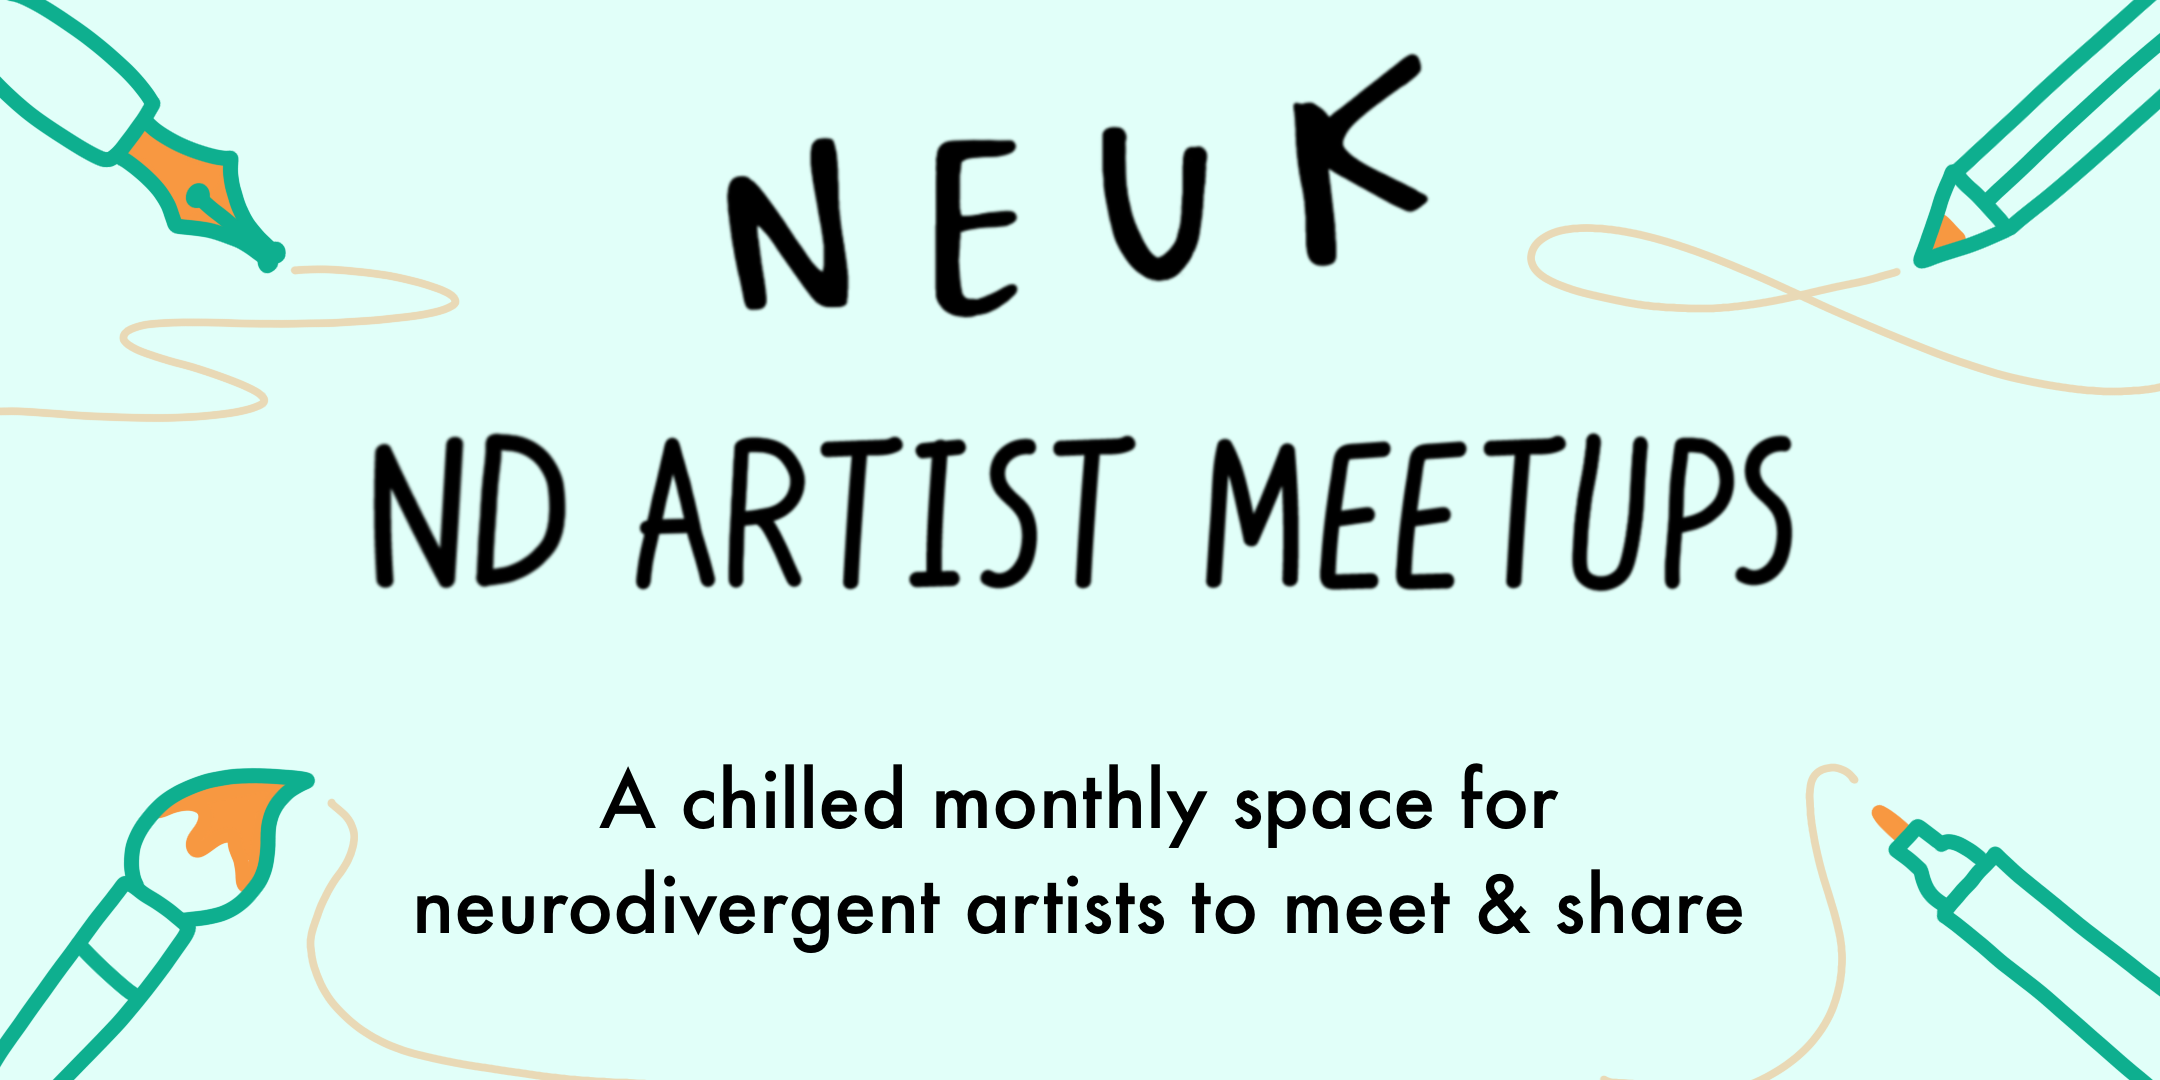 Neuk ND Artist Meet-ups